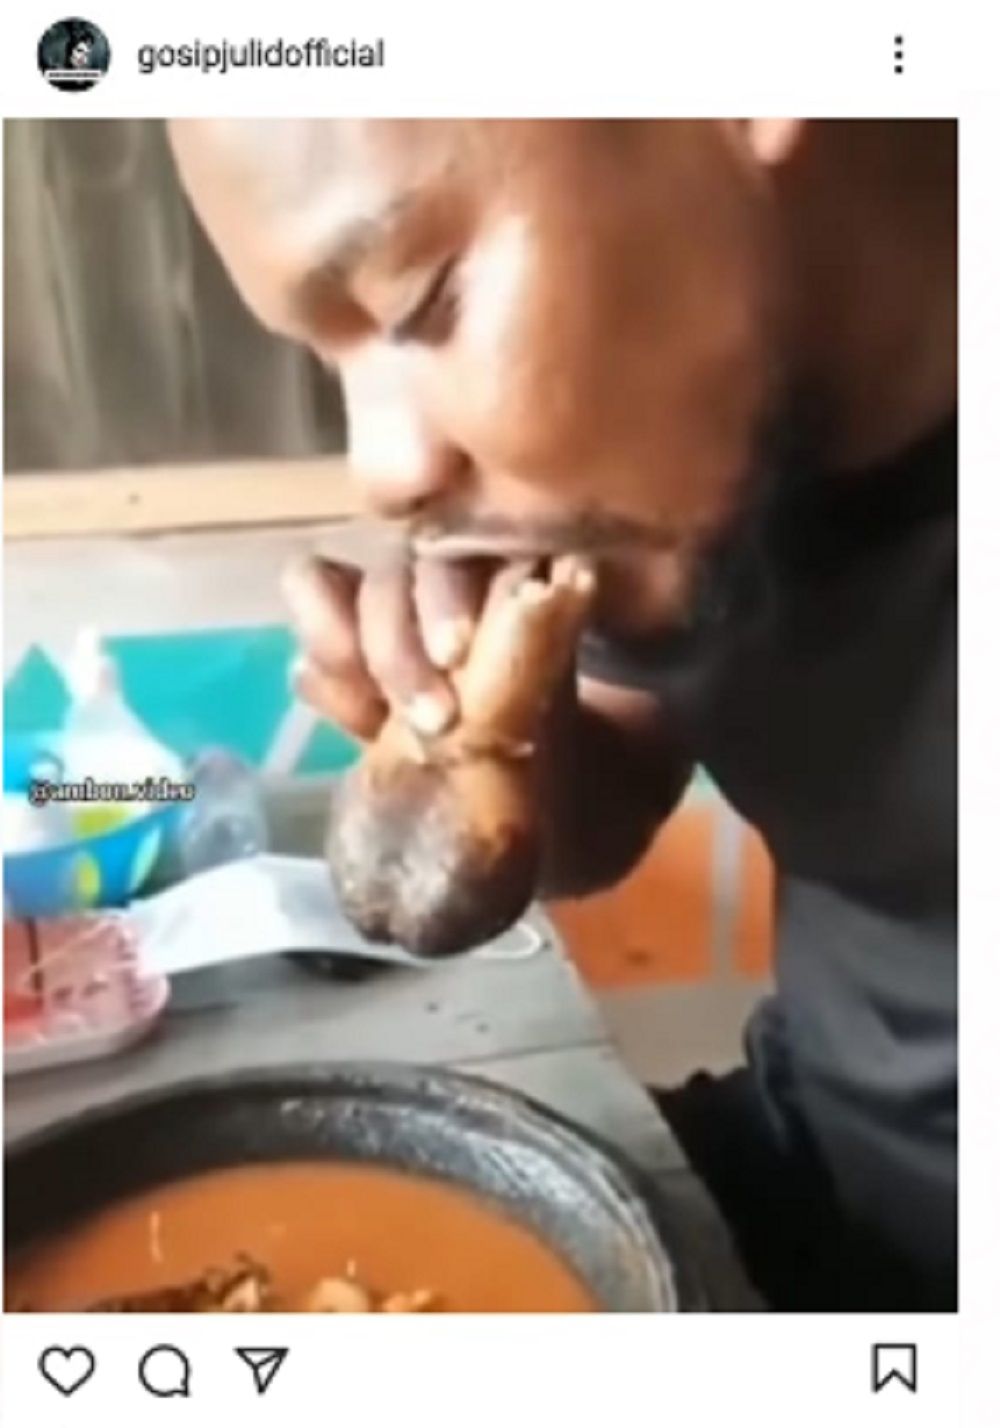 Heboh, Pria ini Makan dengan Lahap Olahan Daging Mirip Penis, Netizen: Auto Muntah Gue